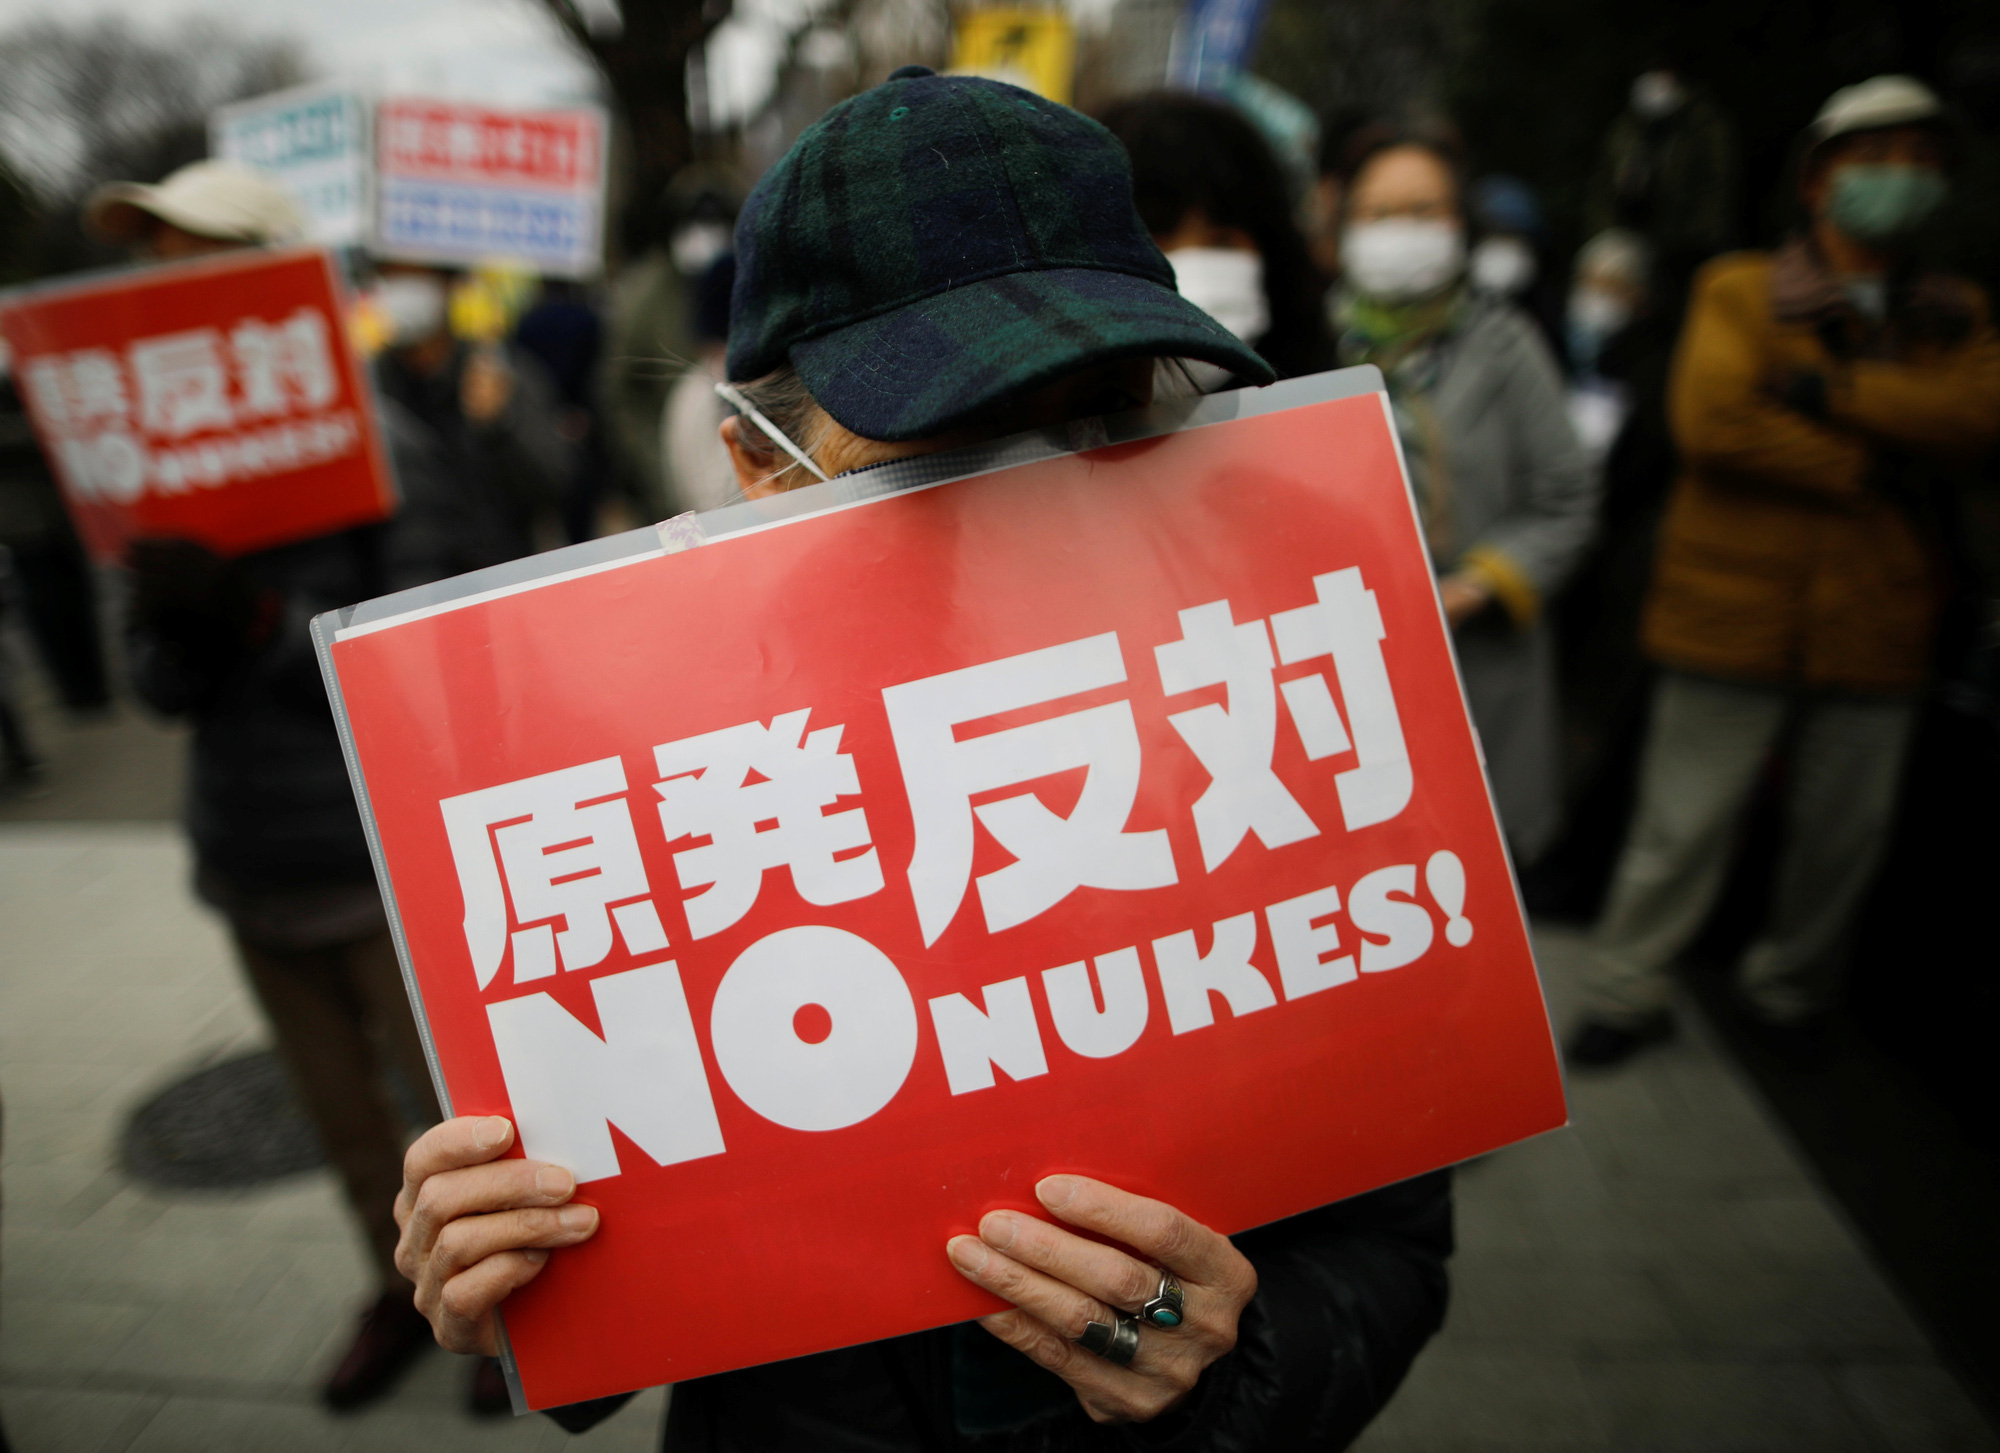 10 năm thảm họa Fukushima: Người Nhật vẫn ám ảnh với năng lượng hạt nhân - Ảnh 1.